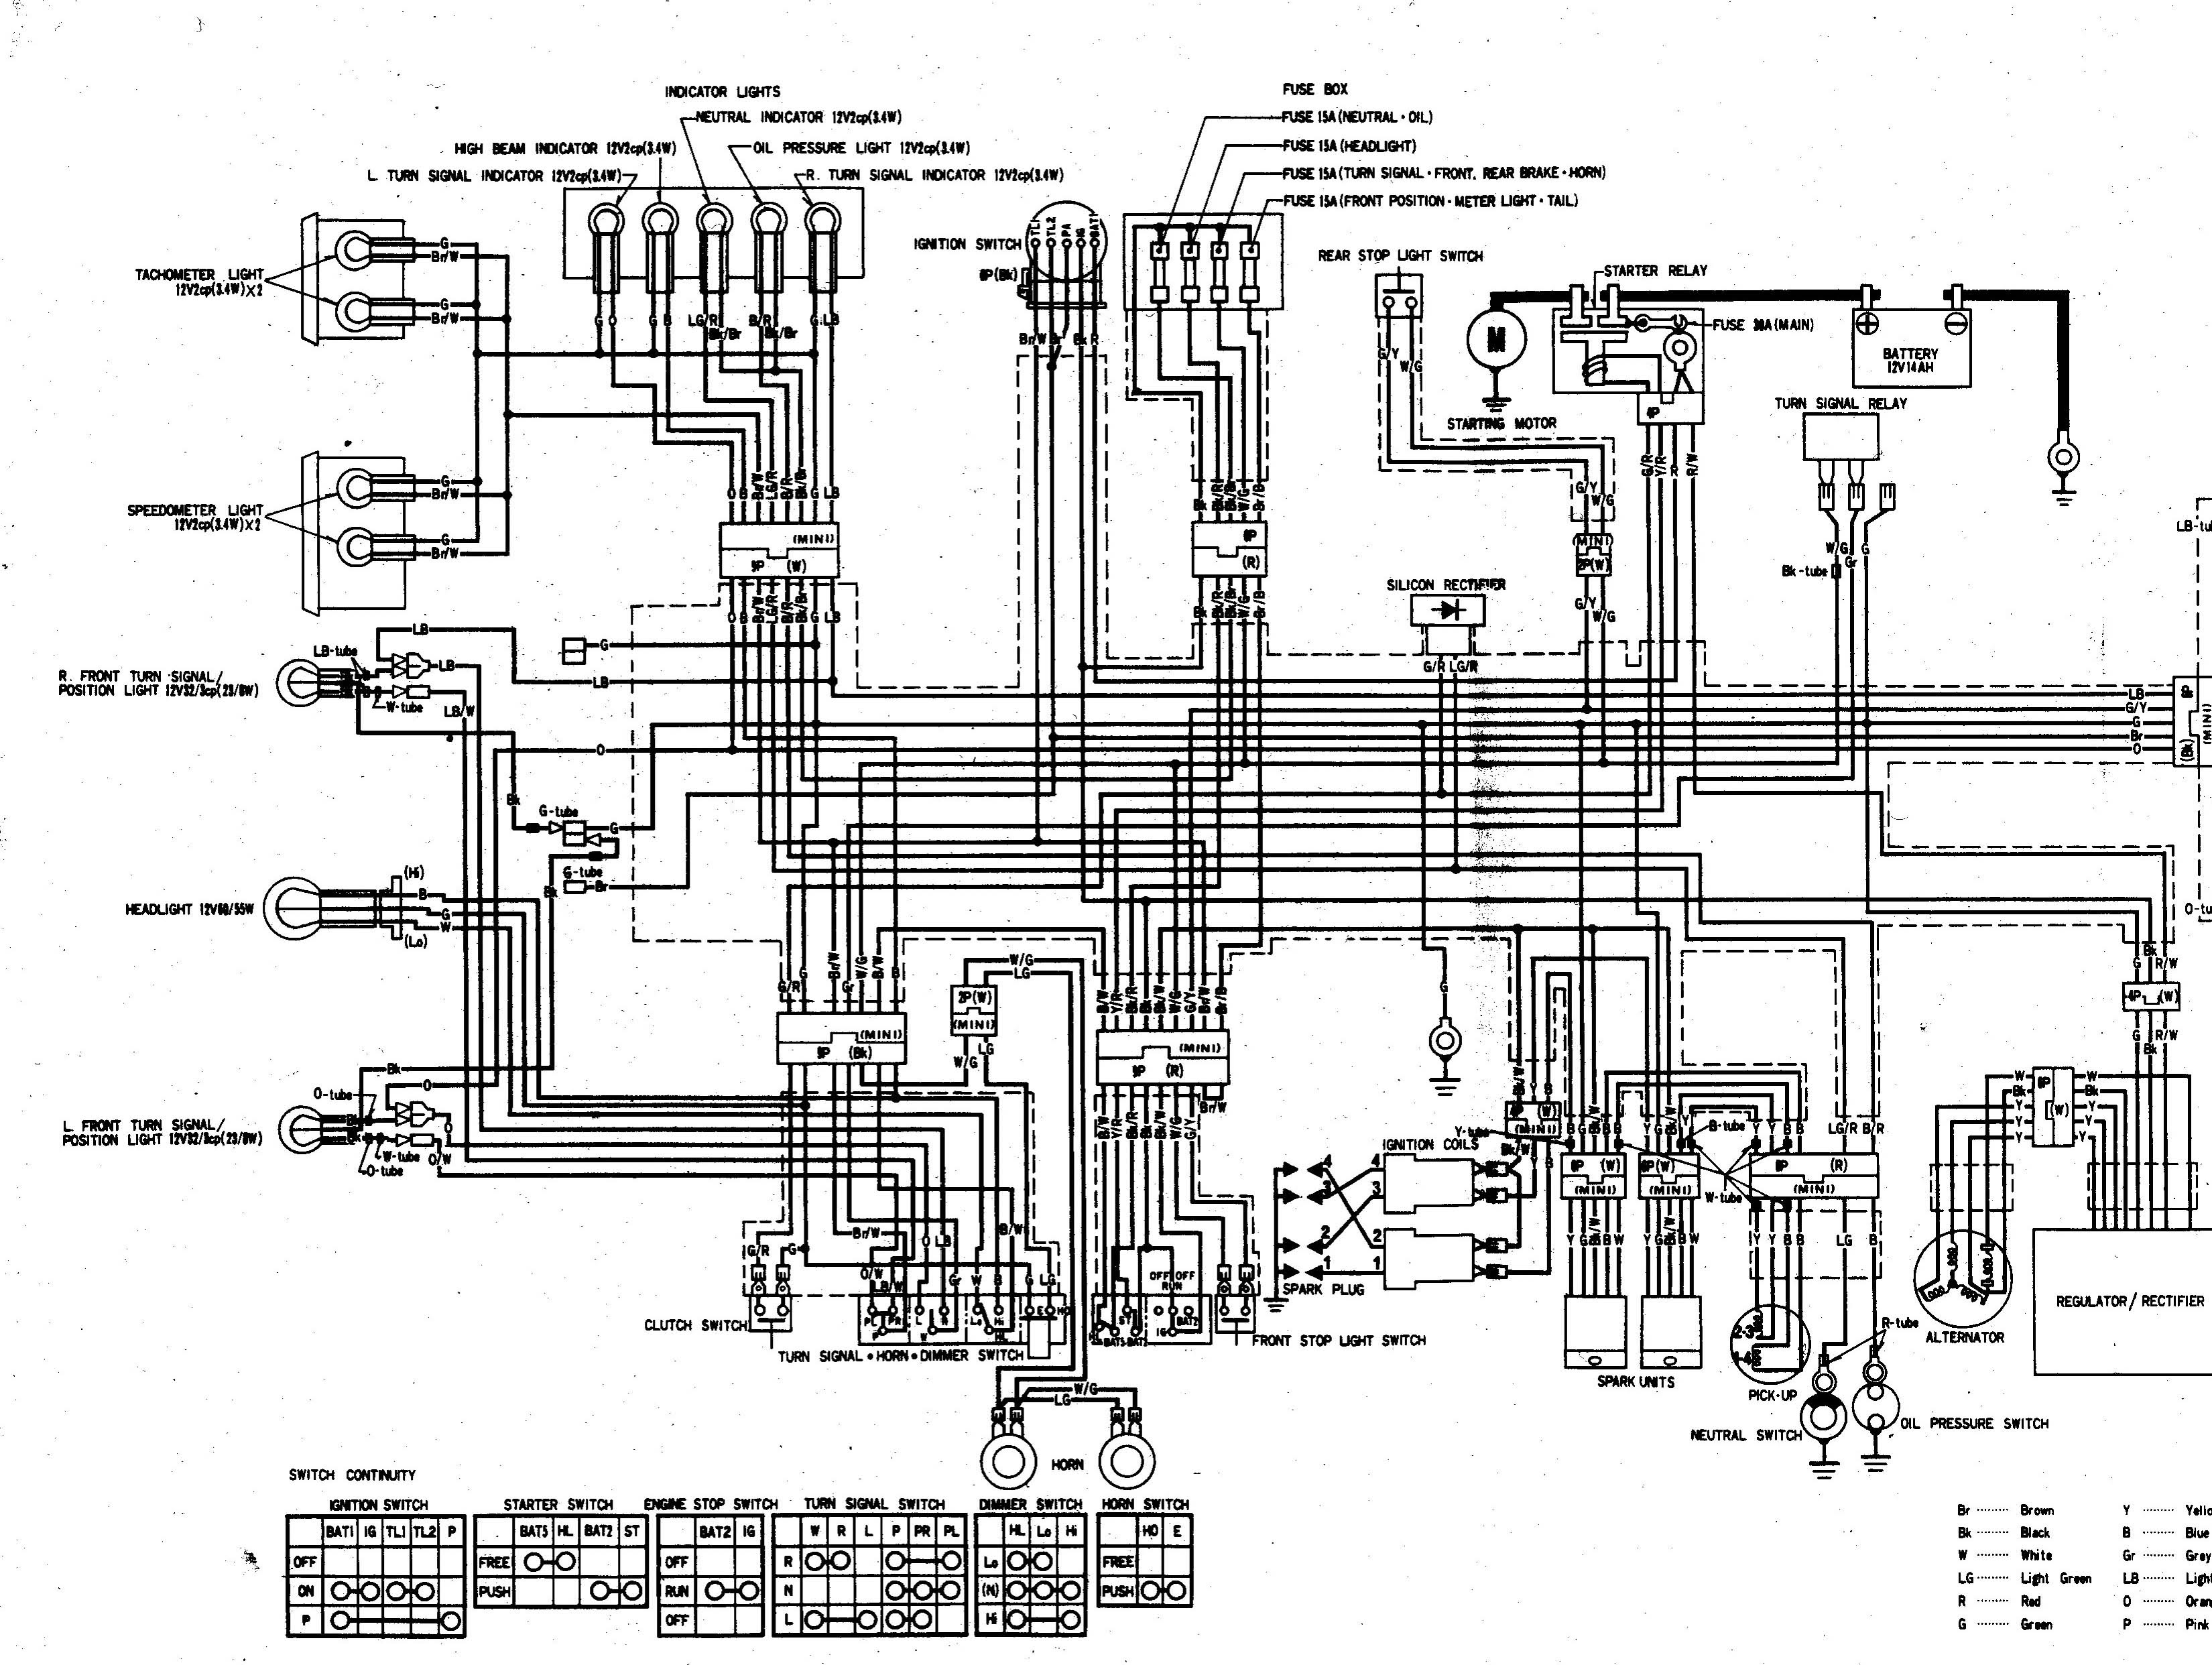 Wiring Diagram For 1983 Nighthawk 650 - Complete Wiring Schemas